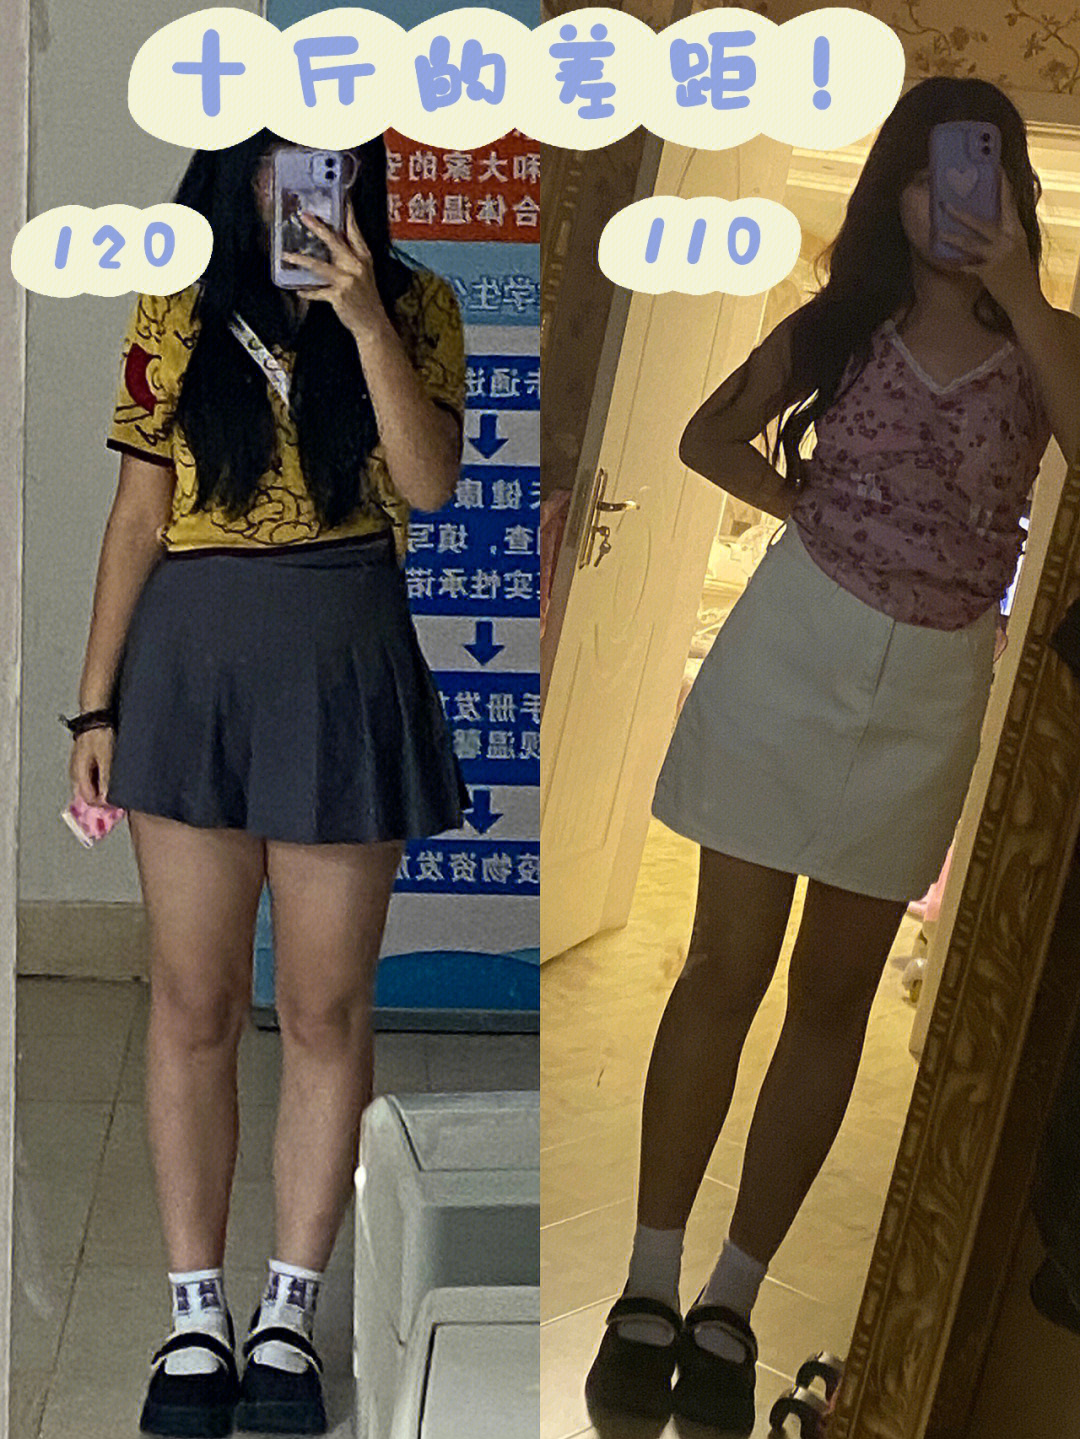 140斤和120斤的区别图图片